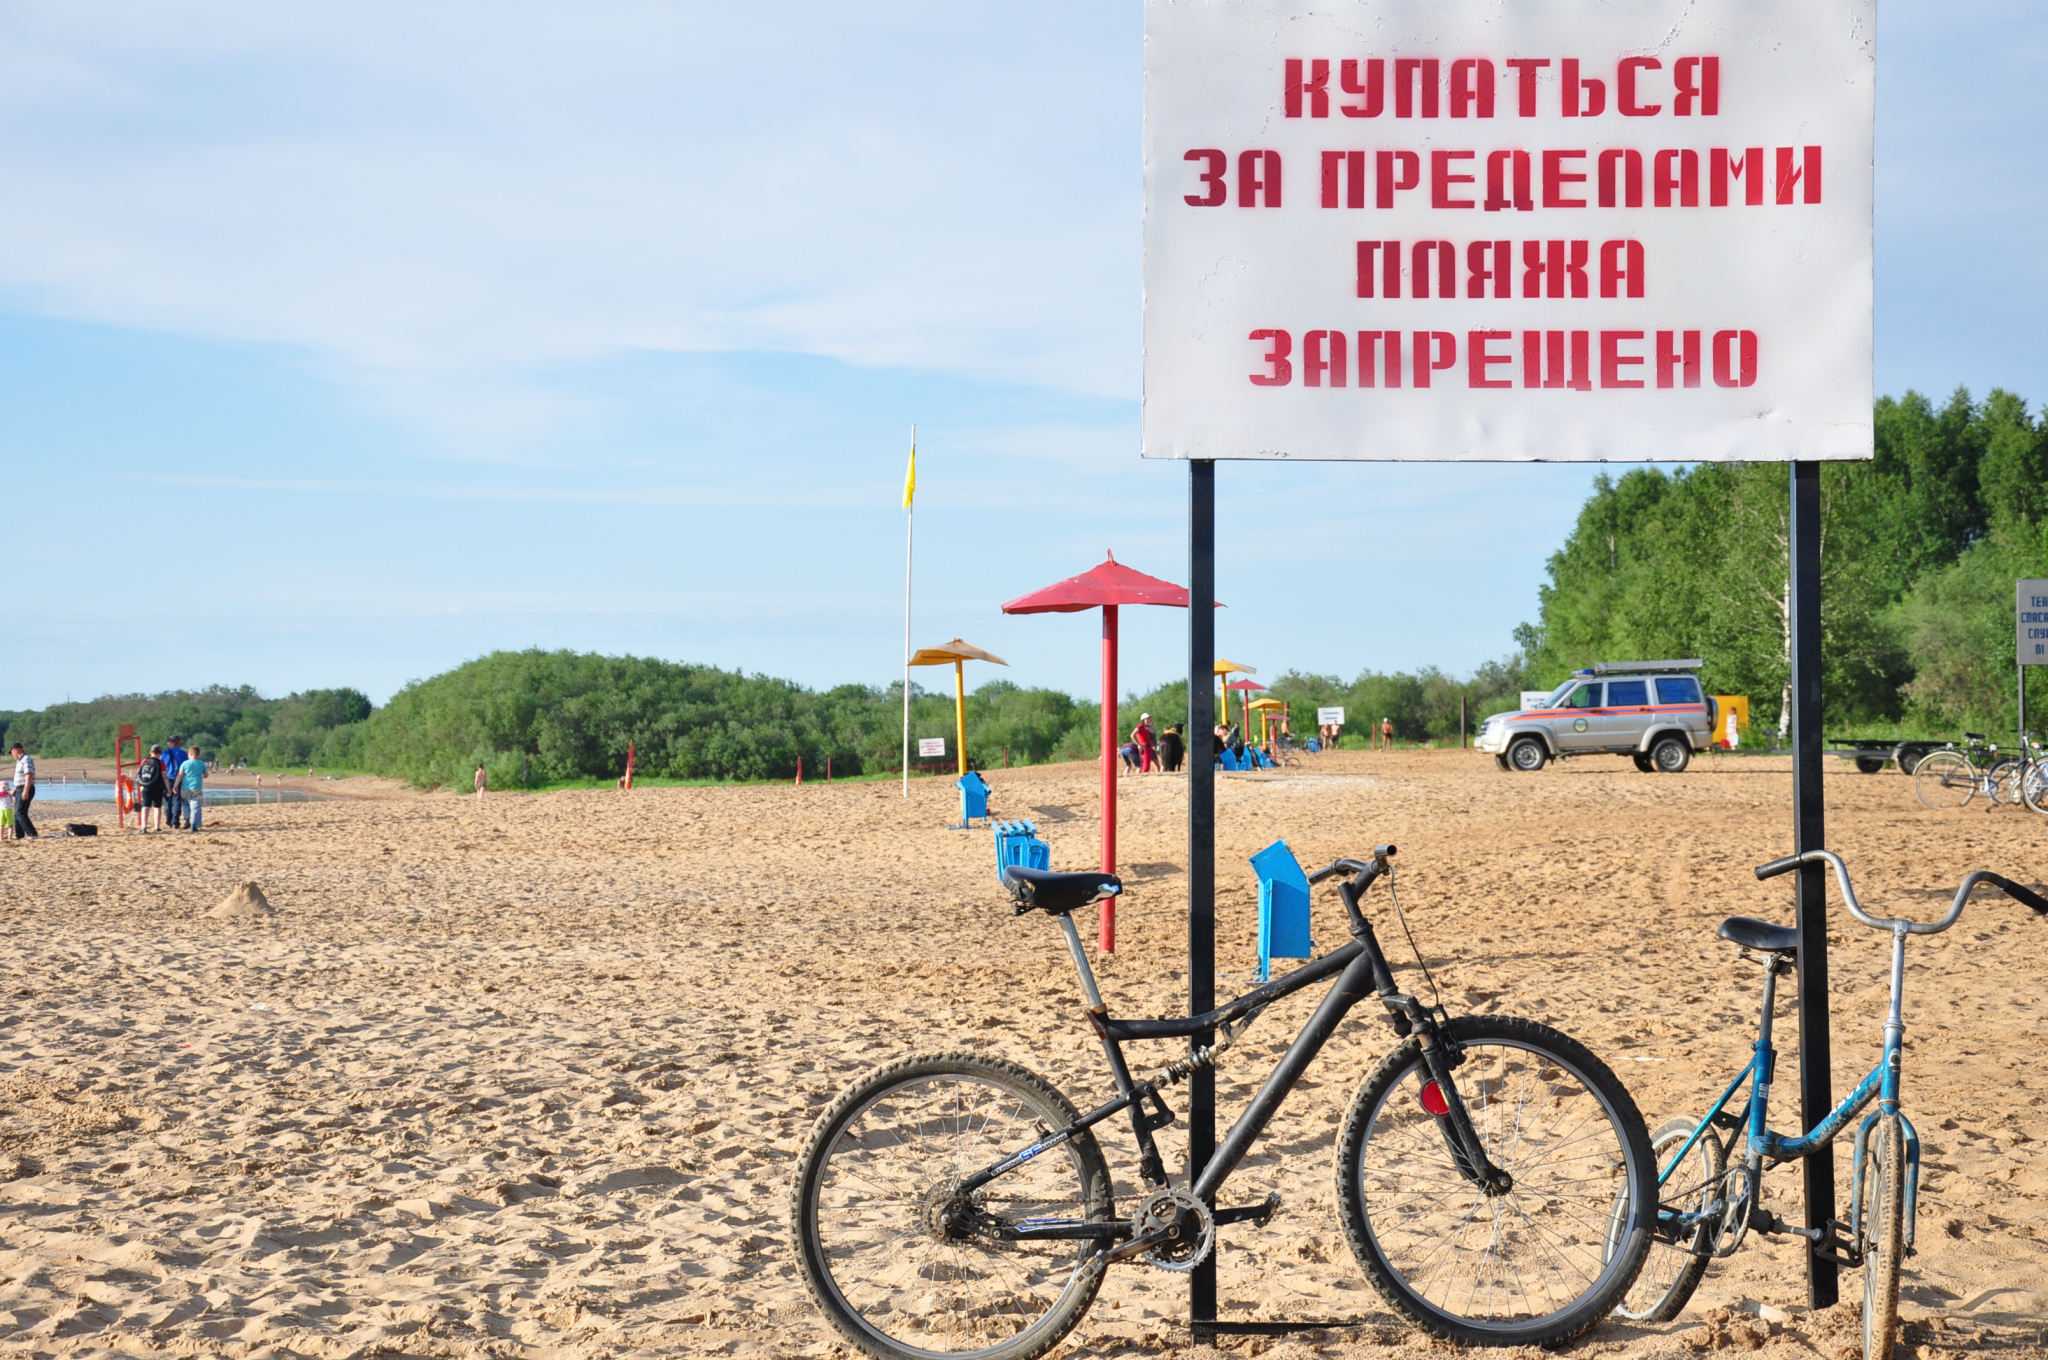 Где искупаться в Рязанской области: список пляжей и мест отдыха